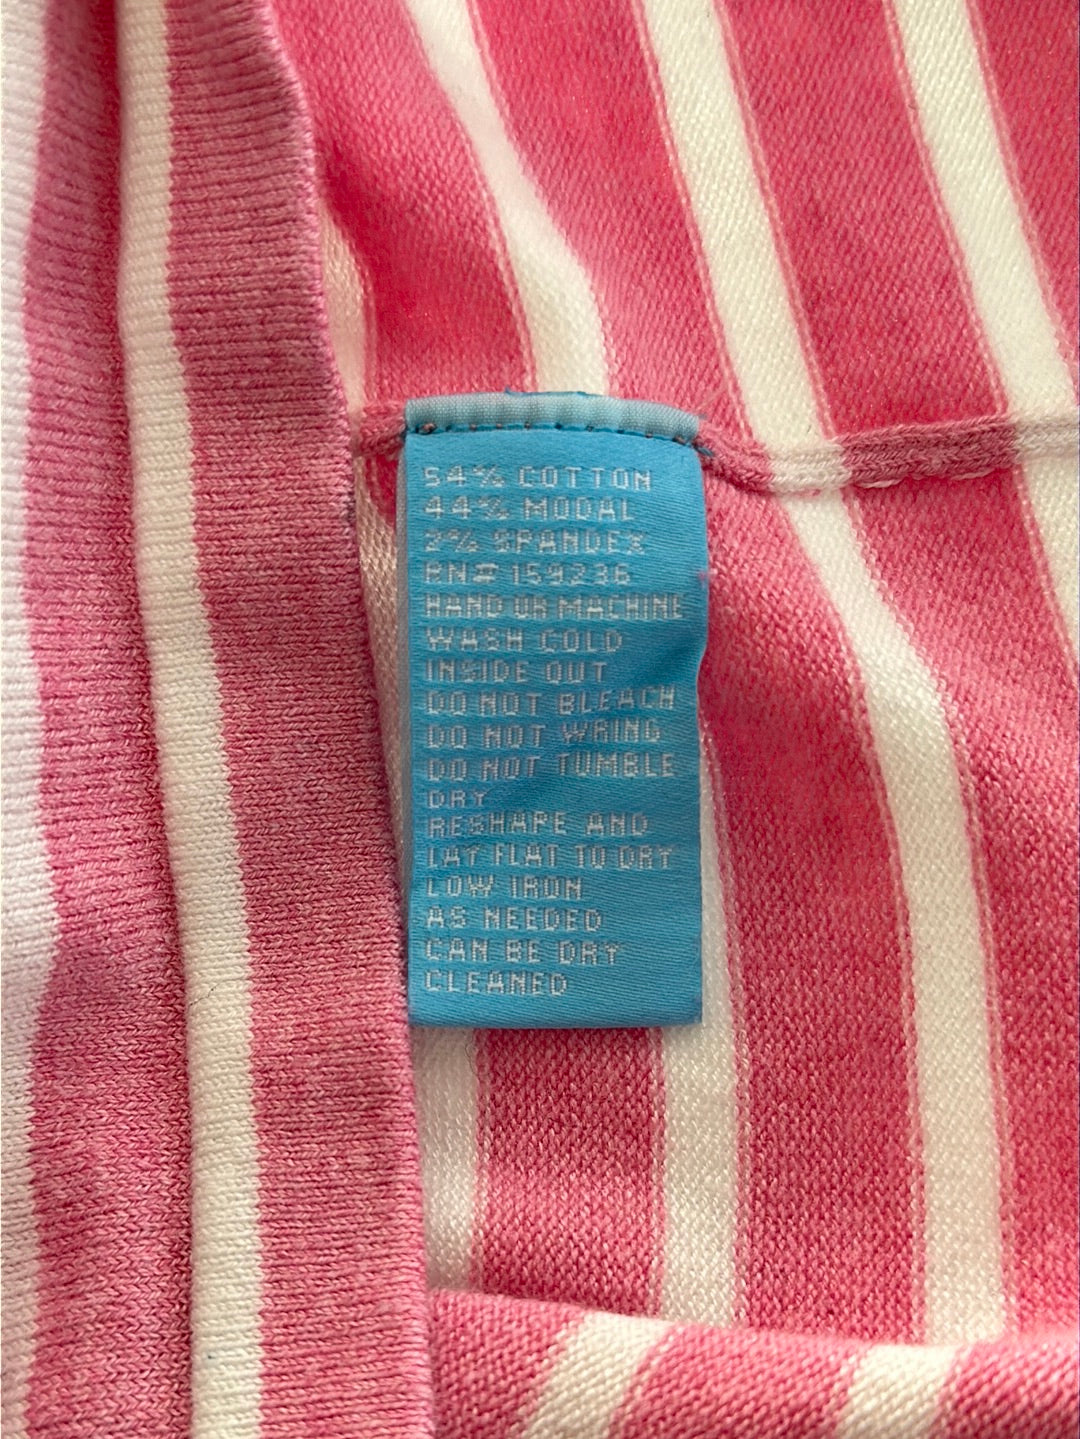 J. MCLAUGHLIN pink white Stripe Cotton Modal Blend Pocket Sweater - S